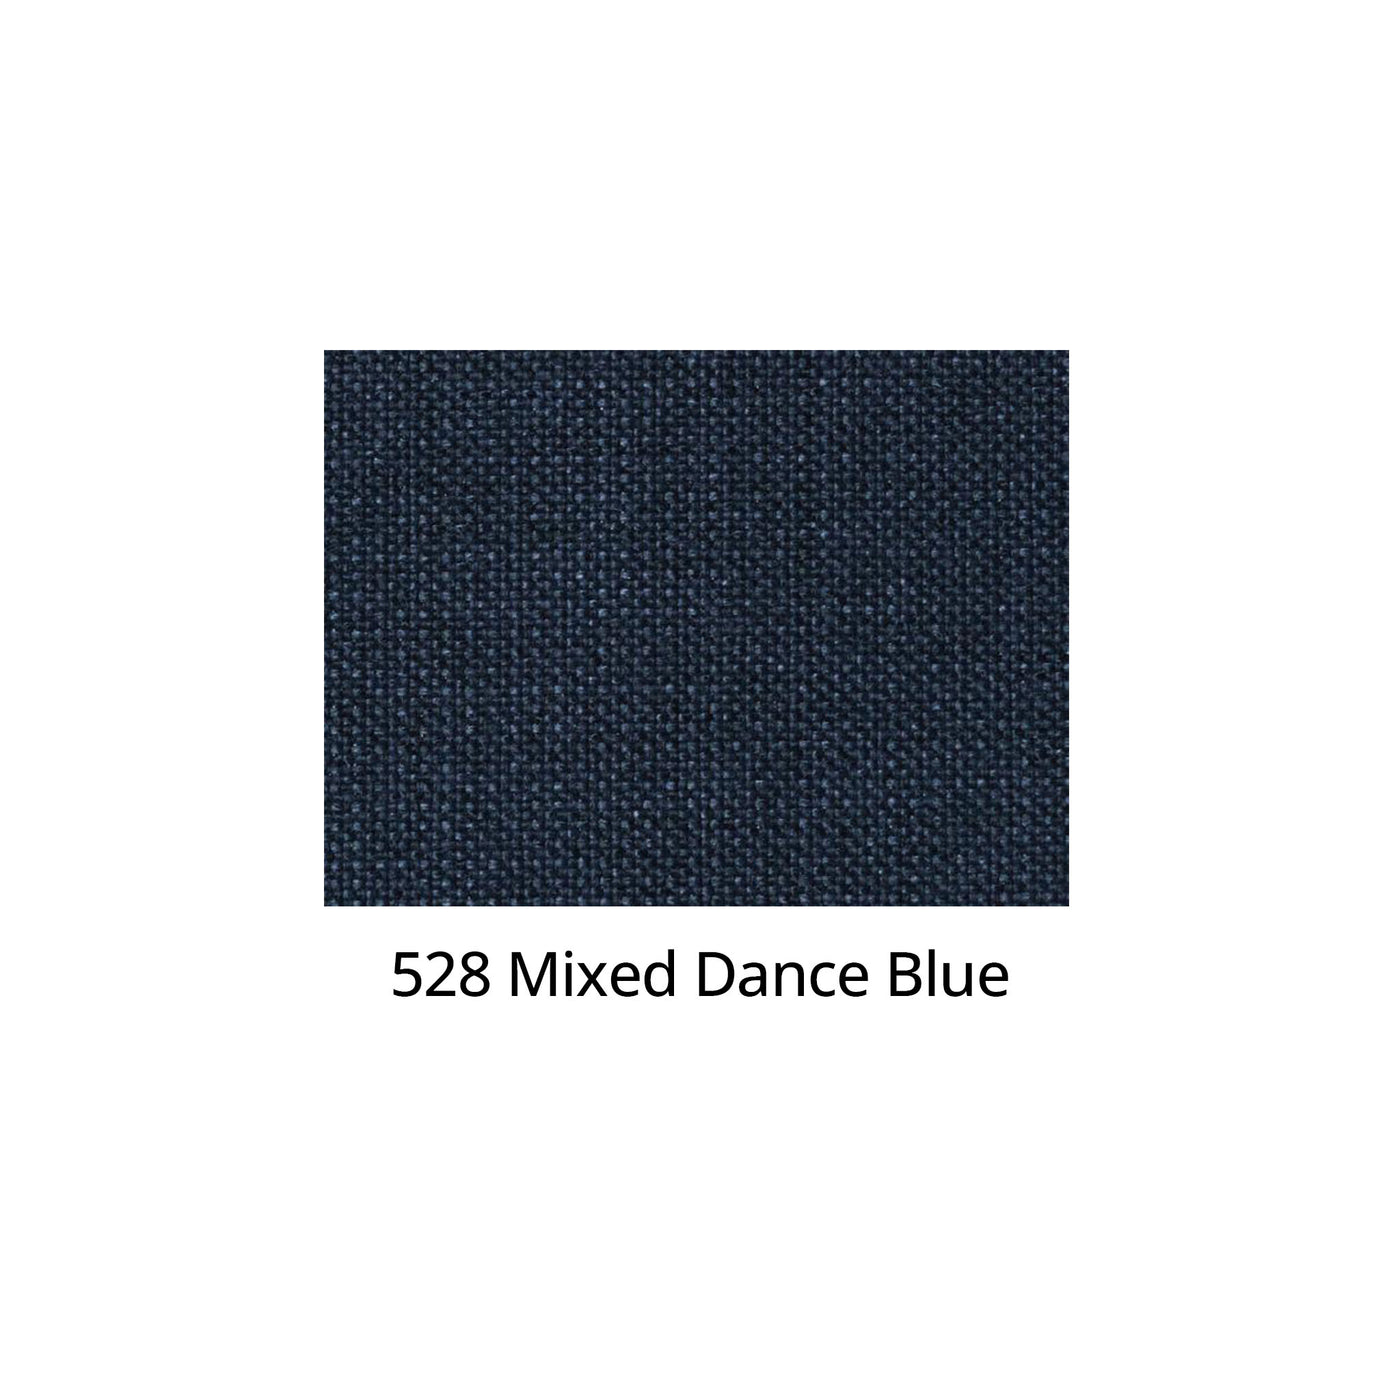 Nærbillede af stoffet 528 Mixed Dance Blue.